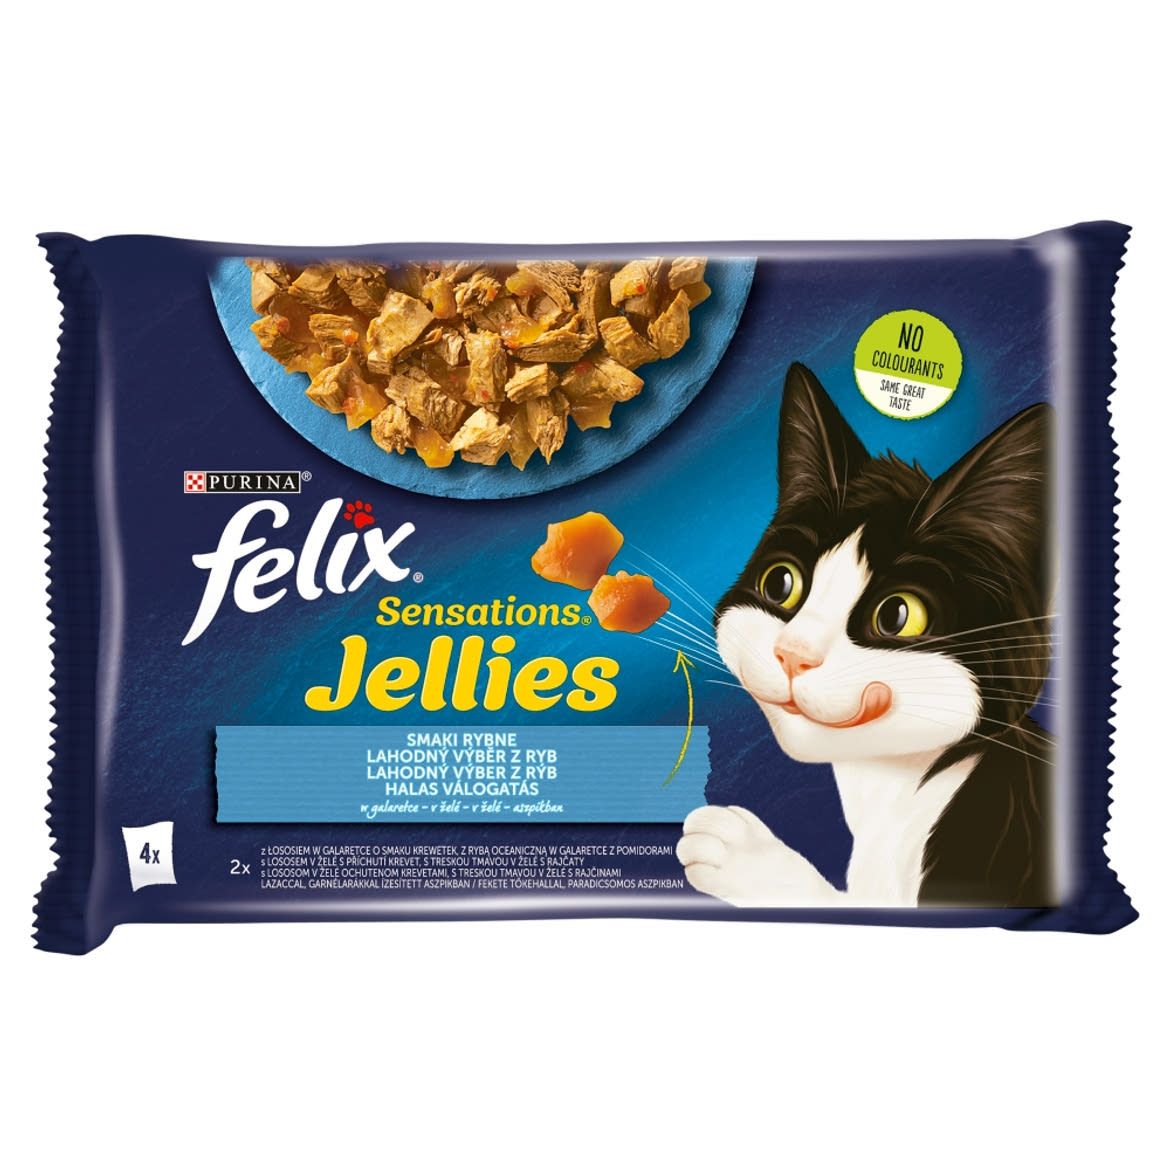 Felix Sensations Jellies Halas Válogatás aszpikban nedves macskaeledel 4 x 85 g (340 g)